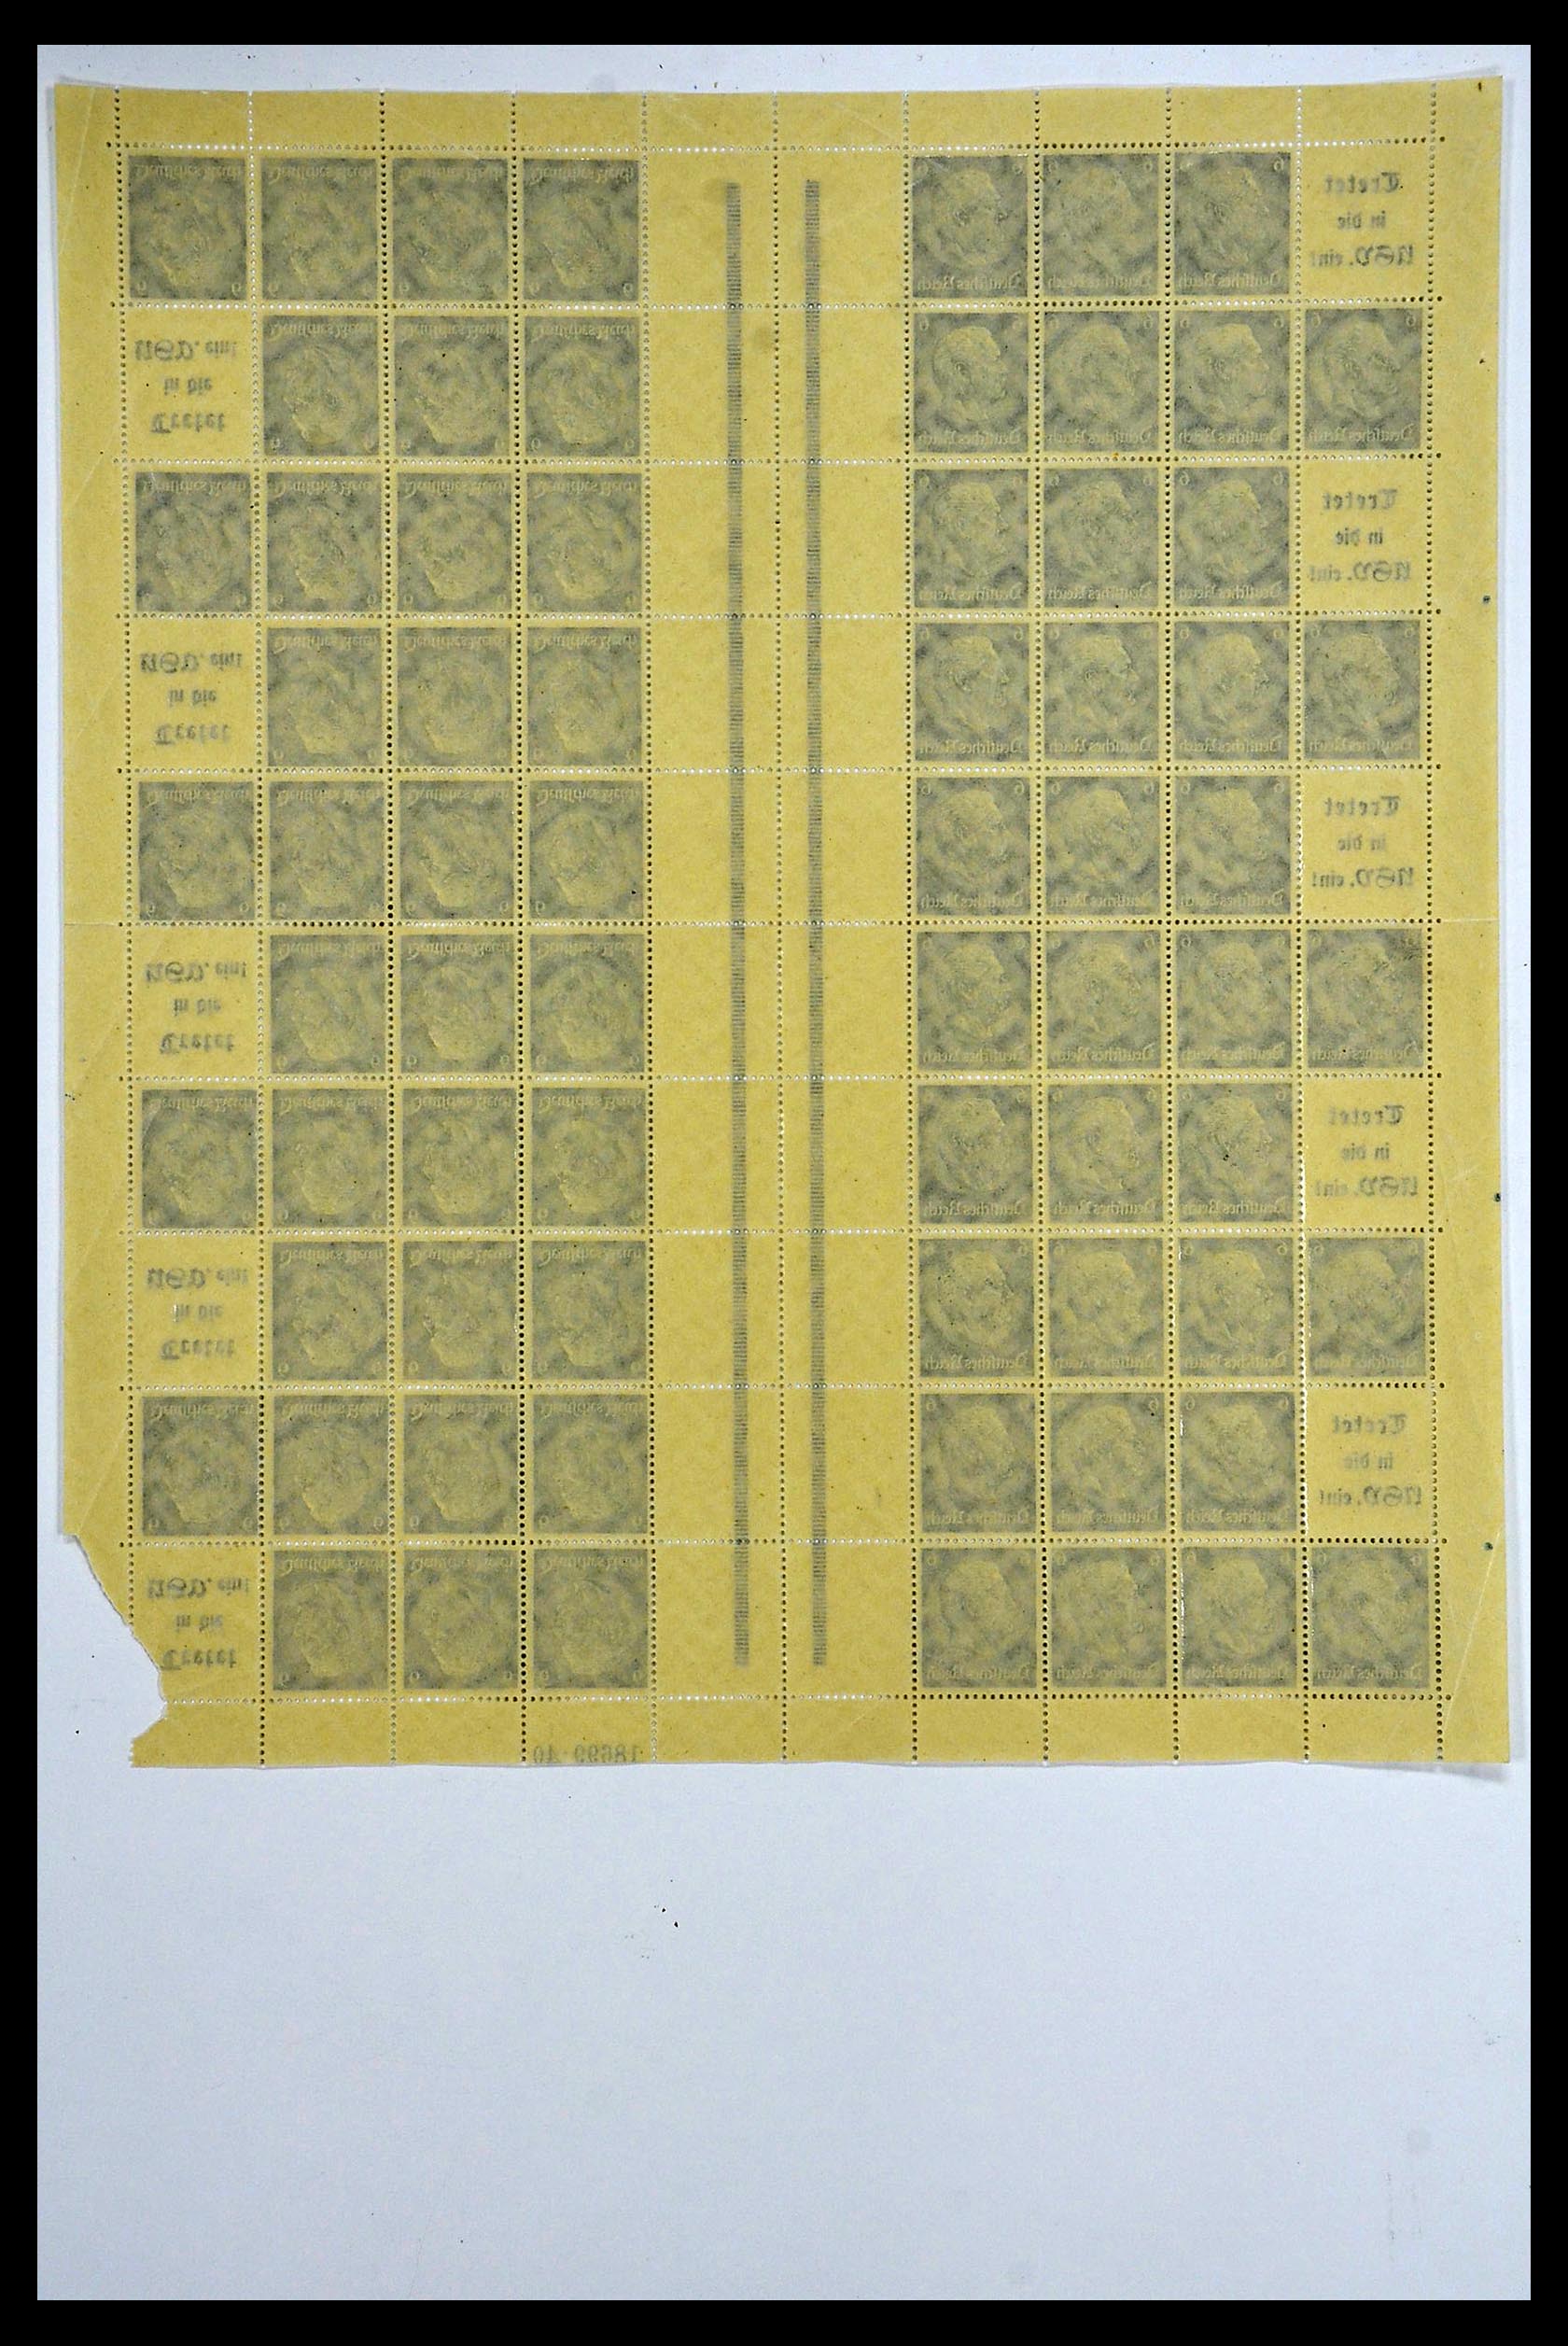 34164 042 - Stamp collection 34164 German Reich Markenheftchenbogen 1933-1942.